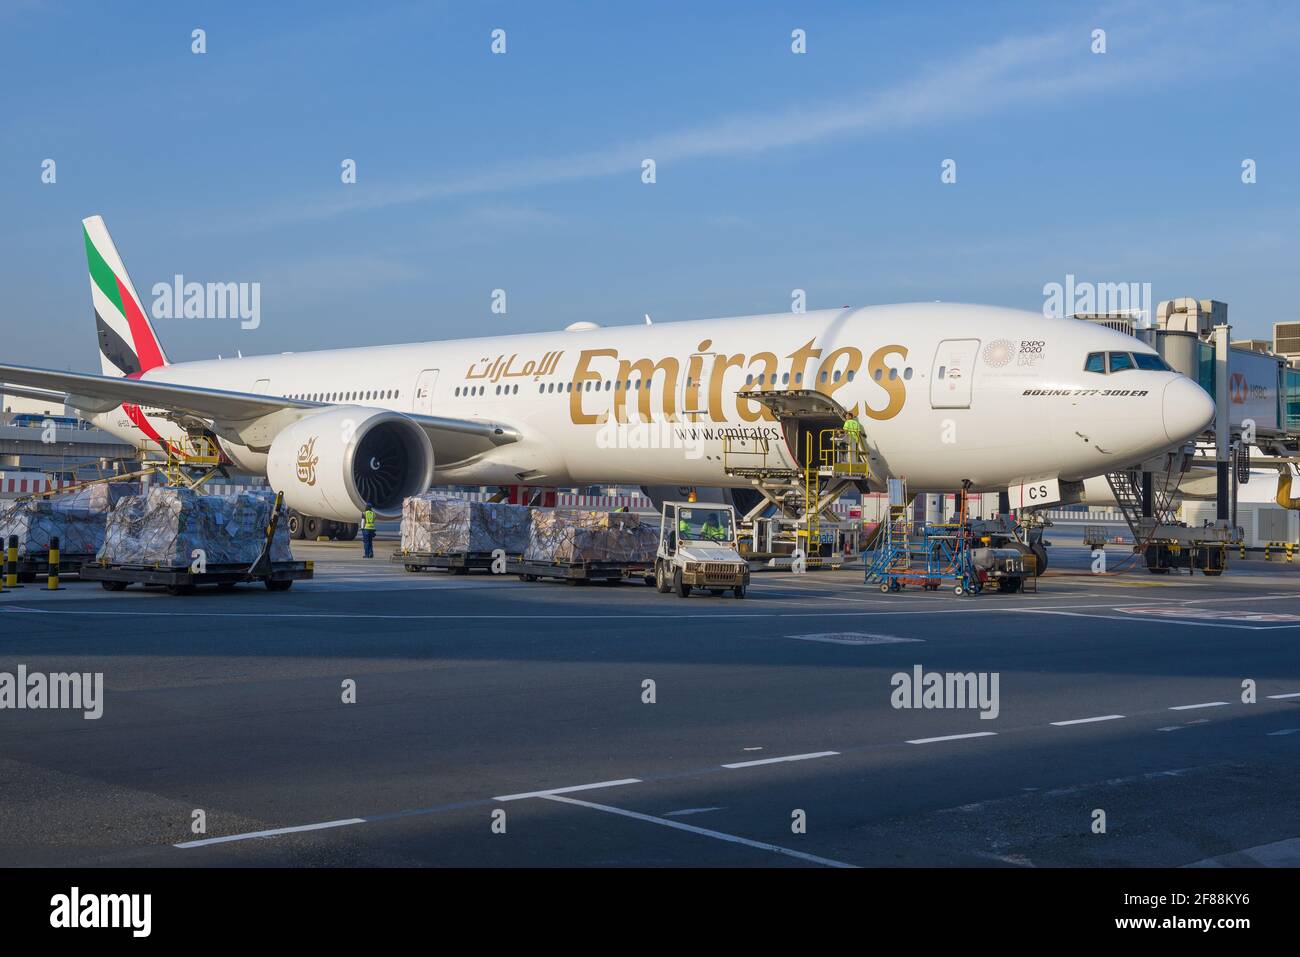 DUBAI, VAE - 02. FEBRUAR 2020: Boeing 777-300 (A6-ECS) von Emirates Airlines wird auf dem Dubai International Airport geladen Stockfoto